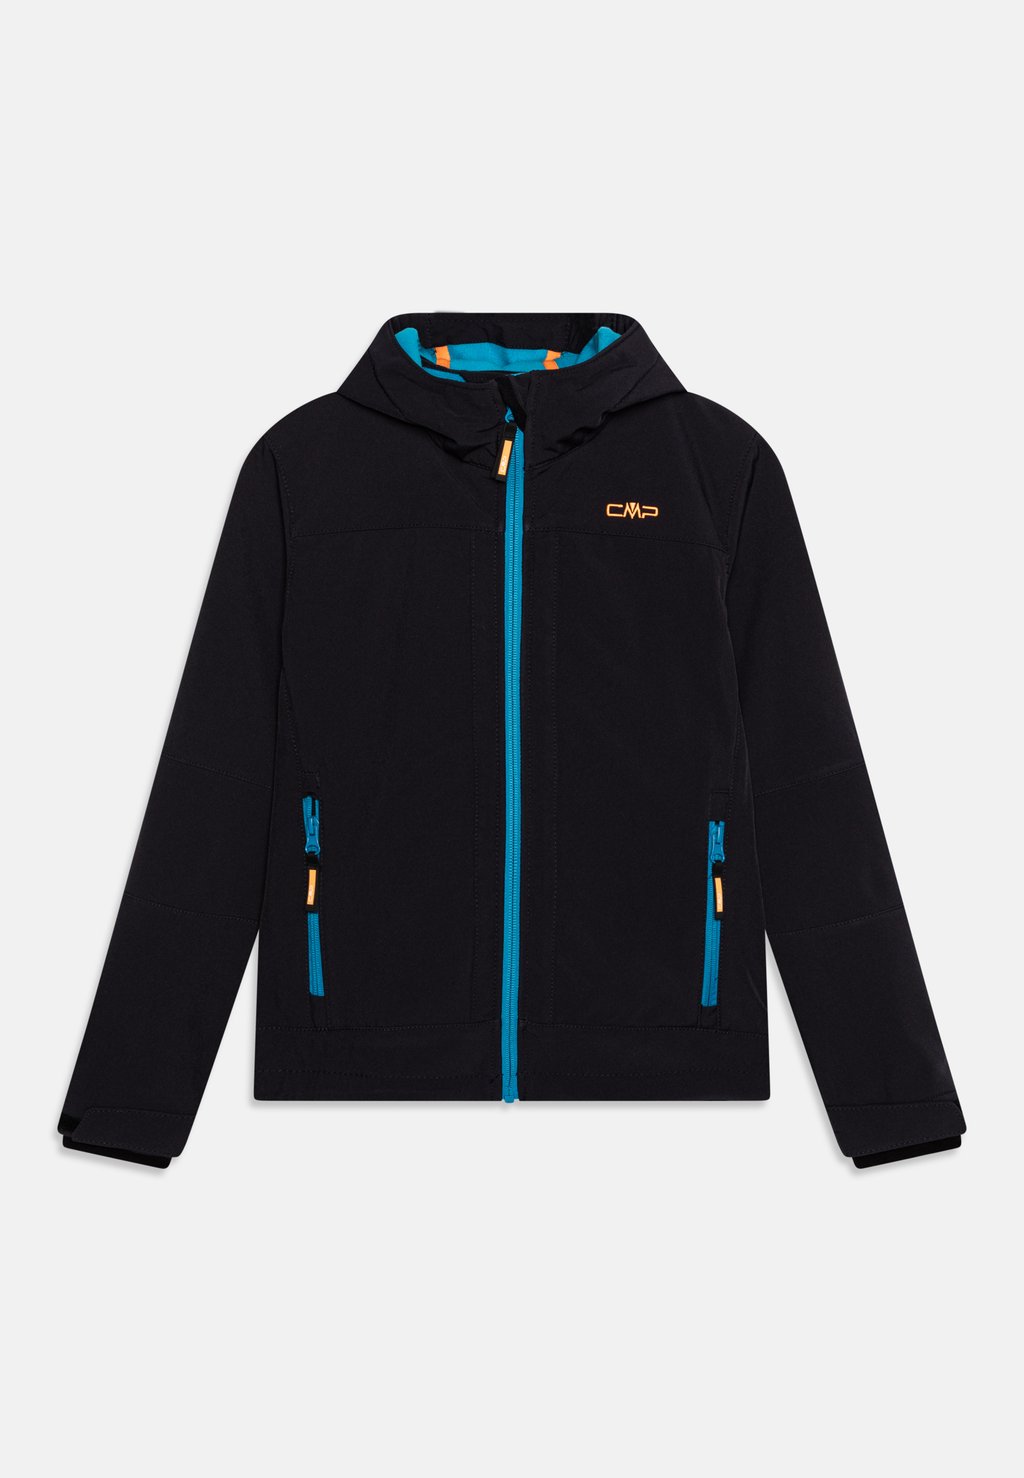 Куртка Softshell KID FIX HOOD UNISEX CMP, цвет antracite/reef